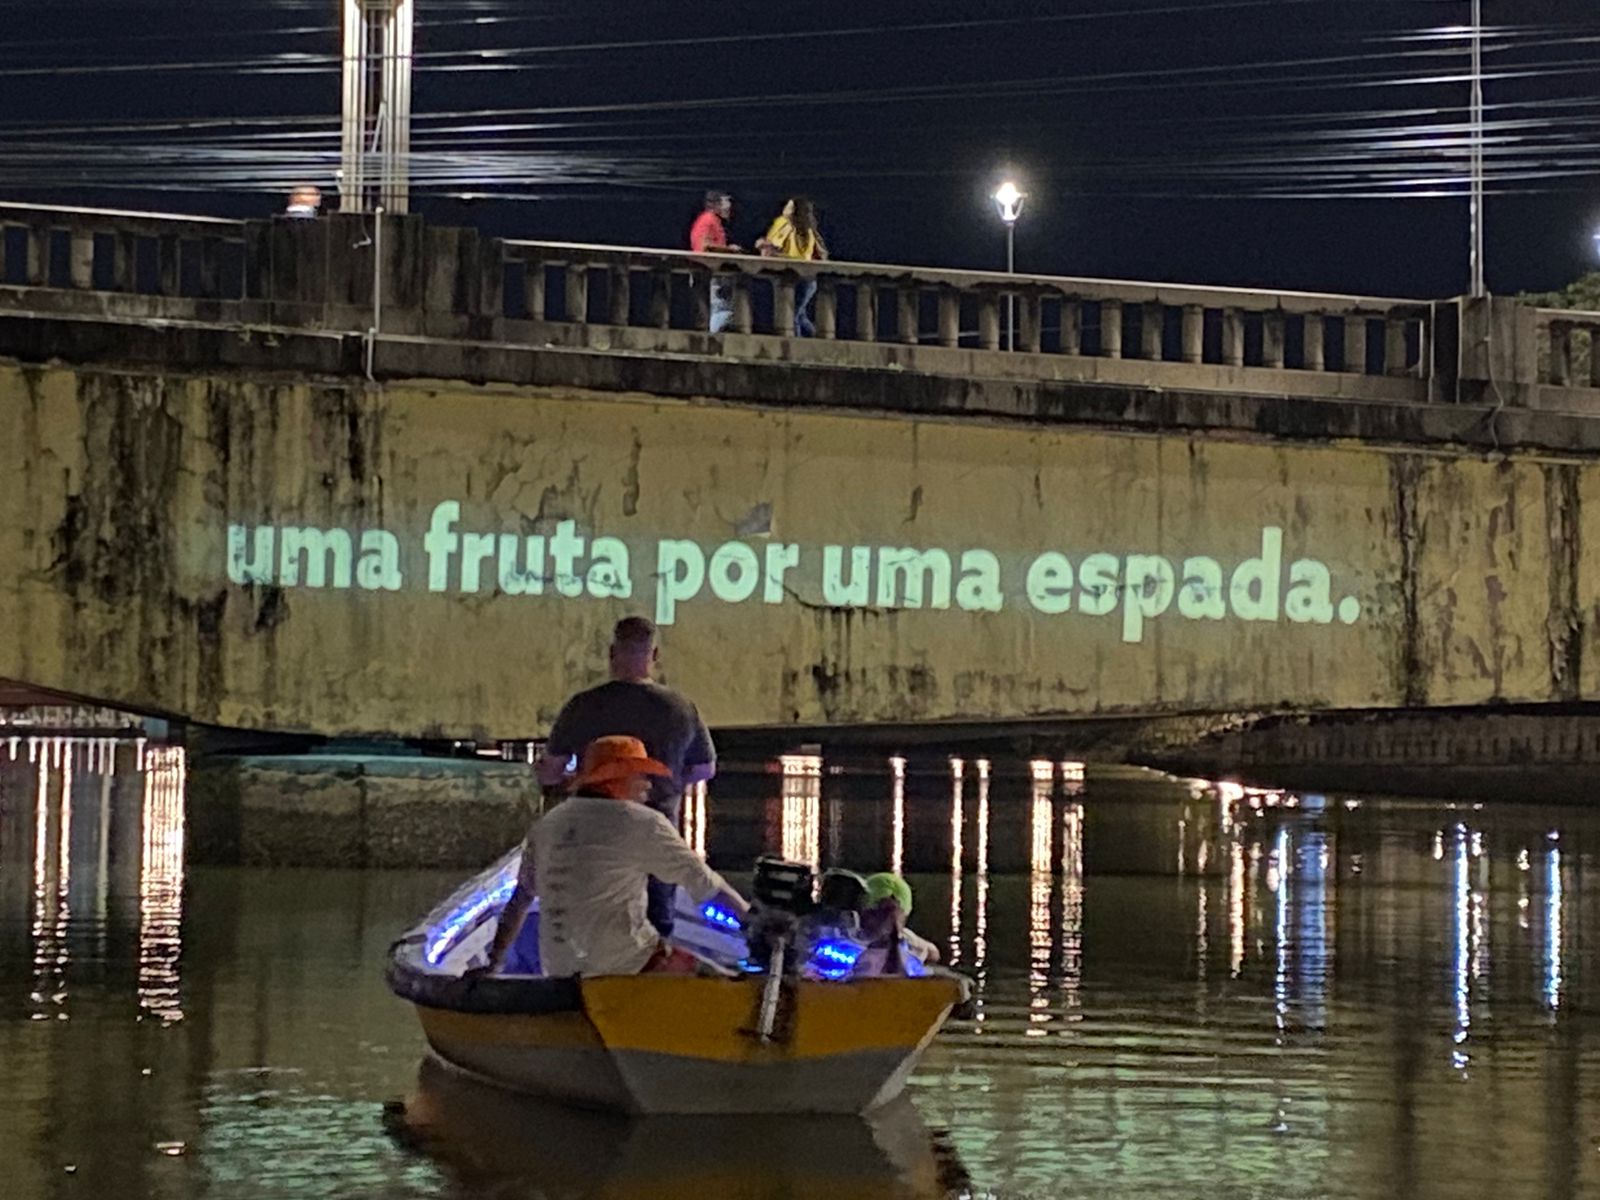 Centenário da Festa de Iemanjá será celebrado com projeções poéticas em rios de Salvador